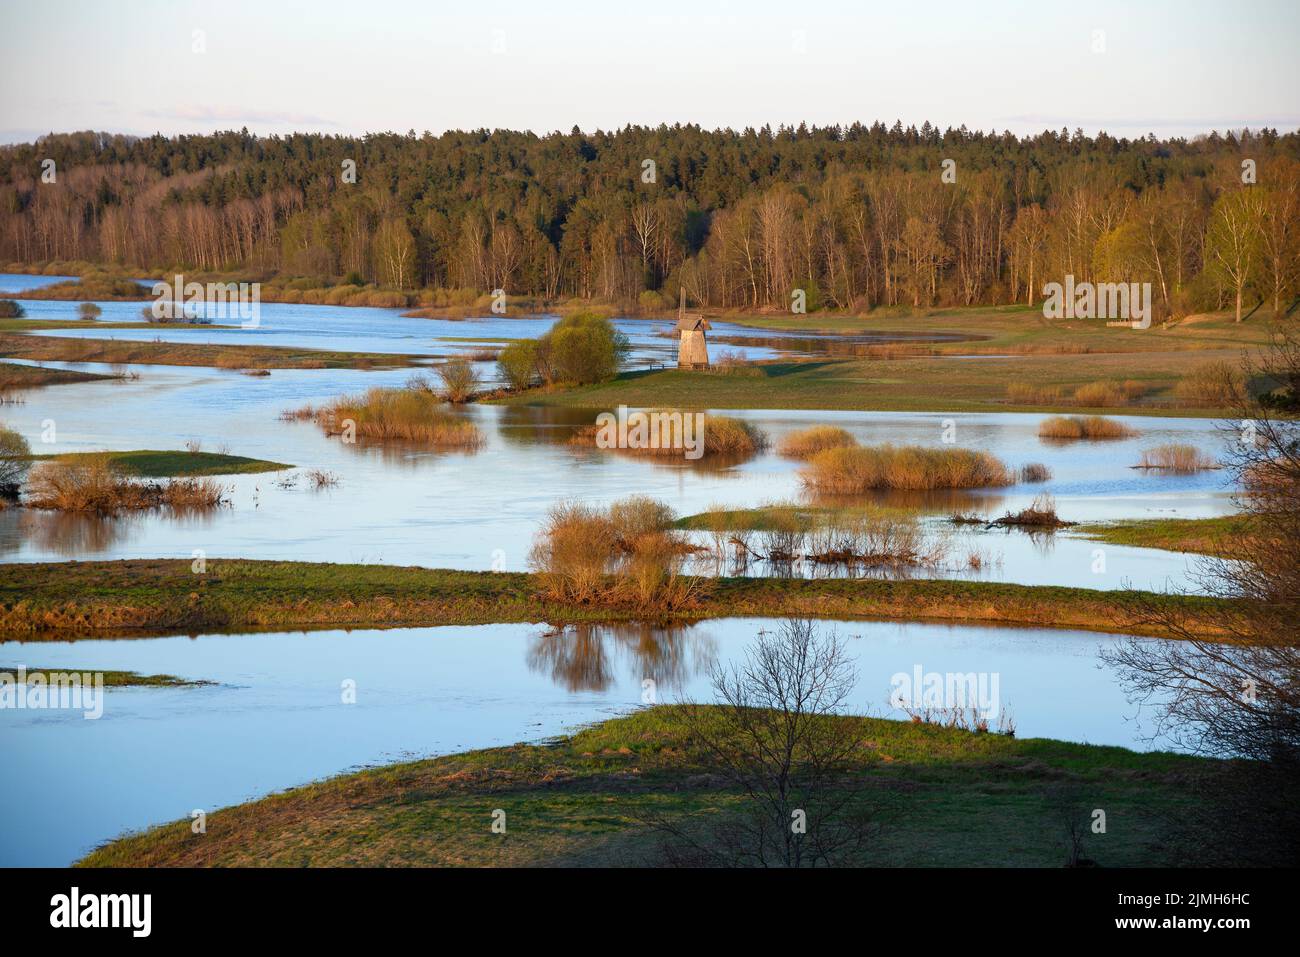 The spring flood of the Sorot River in the sunset light. Mikhailovskoye, Pskov region. Russia Stock Photo